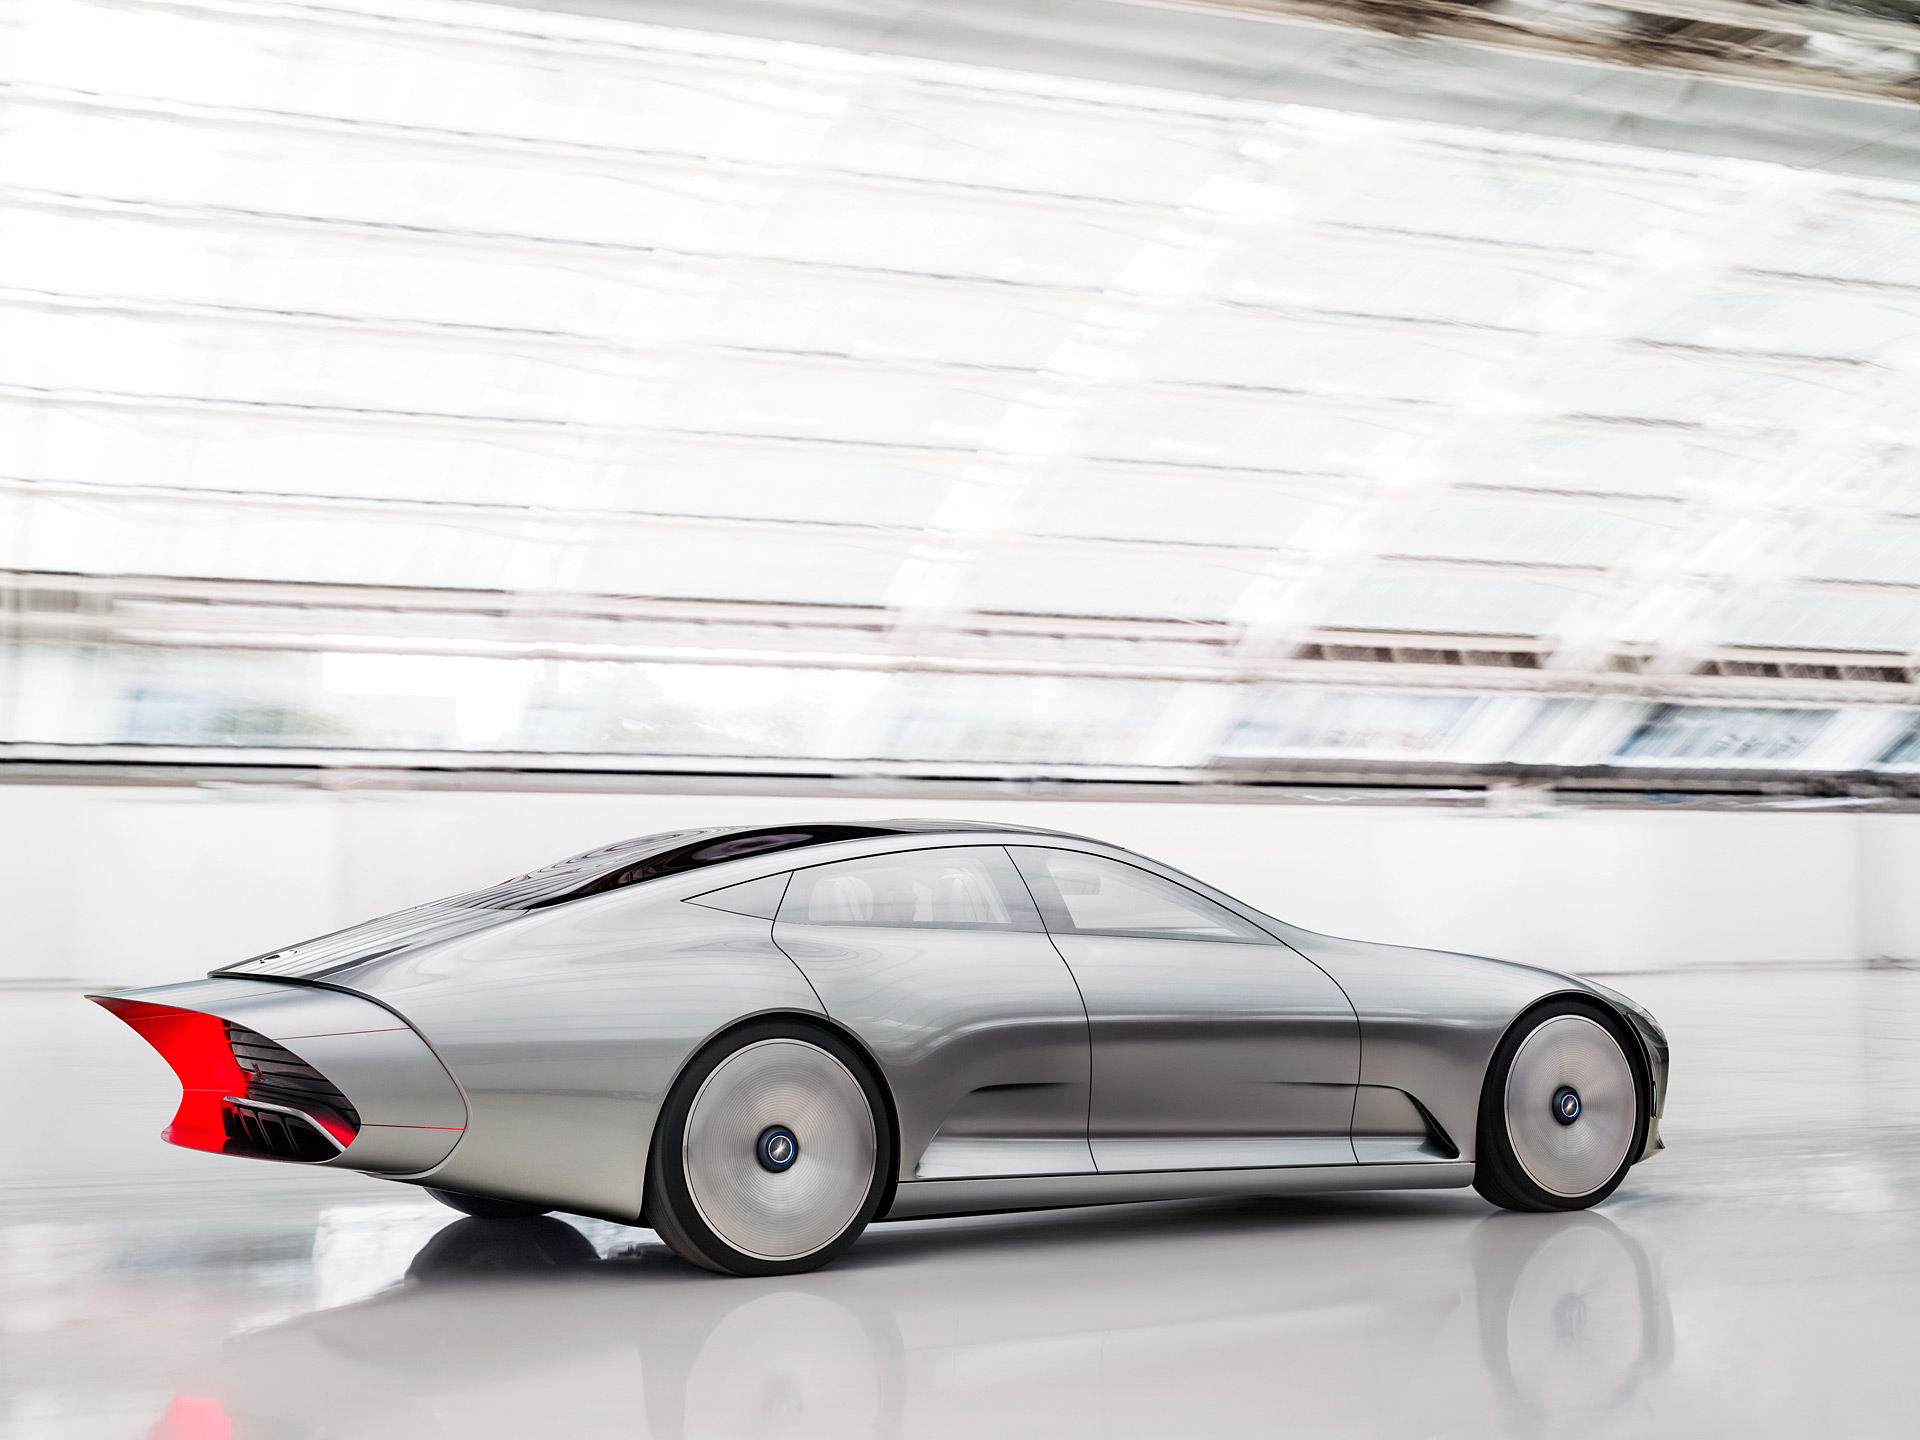  2015 Mercedes-Benz IAA Concept Wallpaper.